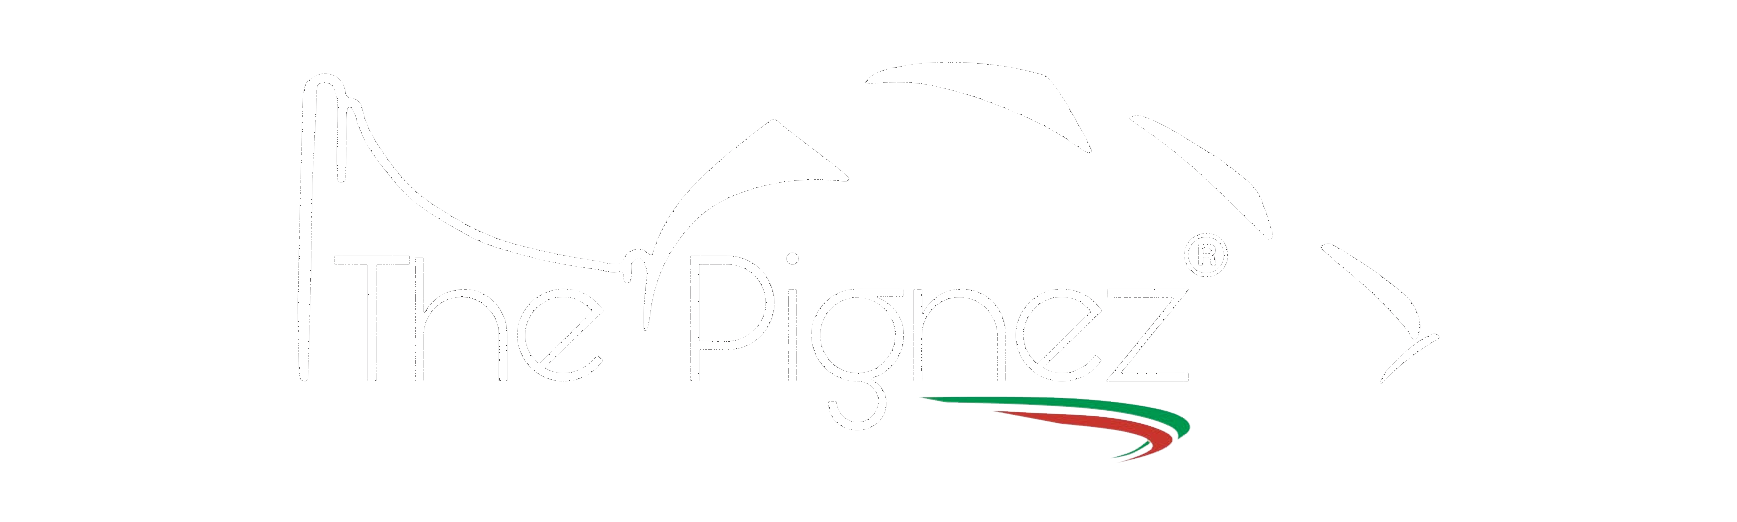 The Pignez